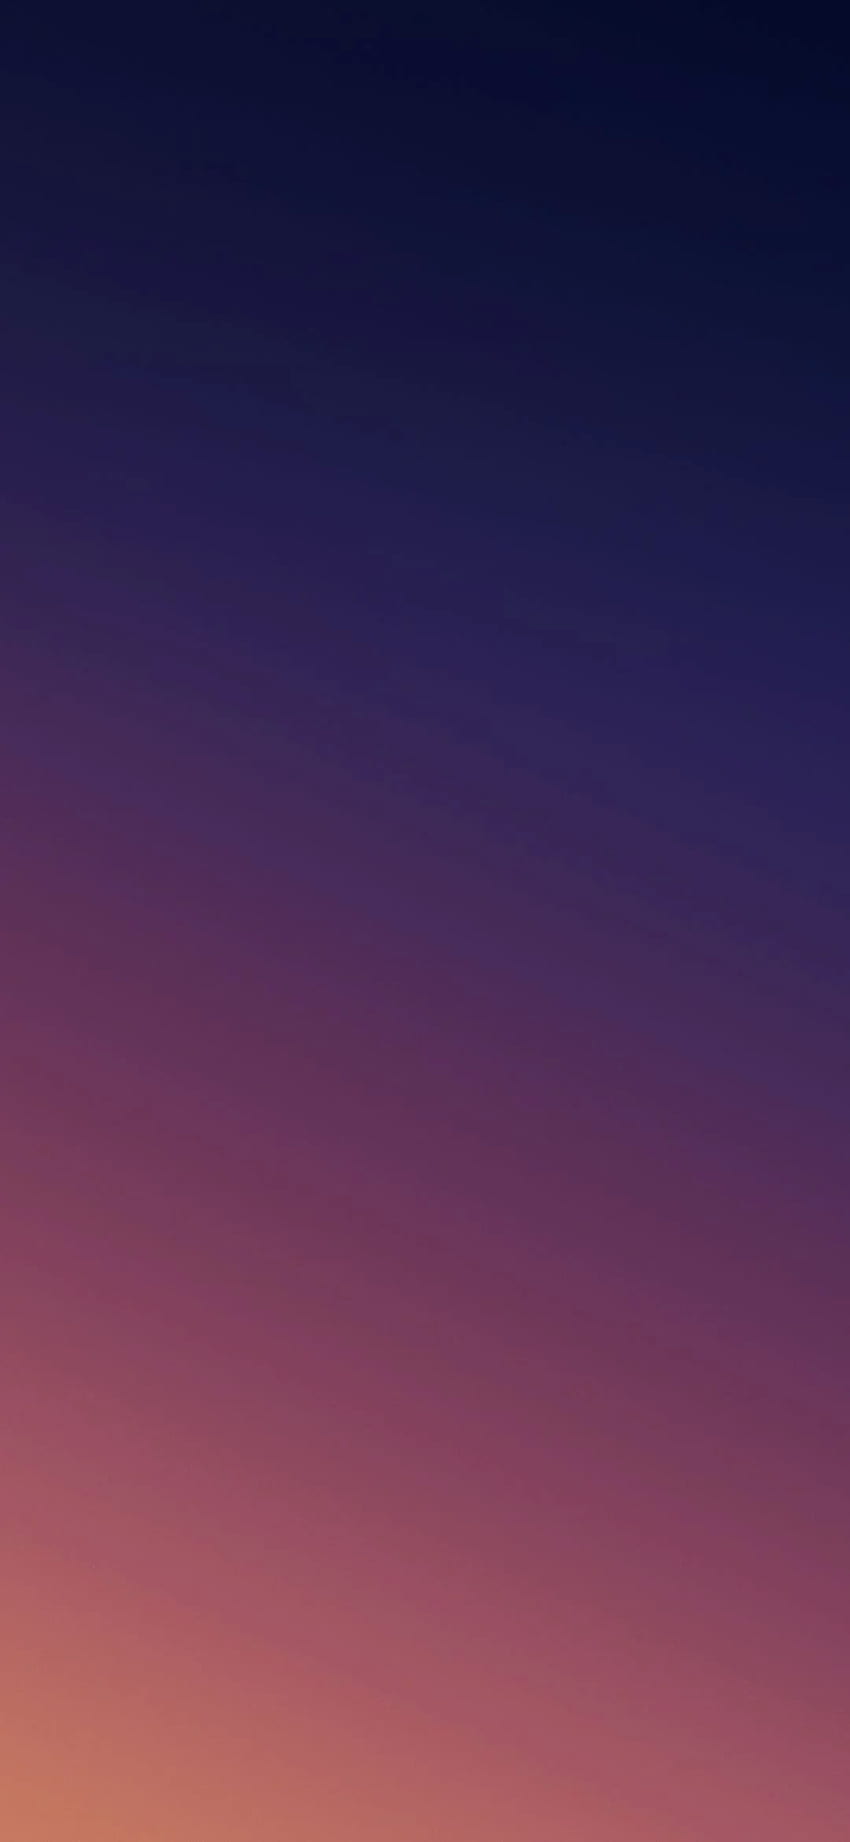 Redmi Note 7 Pro in Full + Resolution, Teardrop Notch HD phone wallpaper